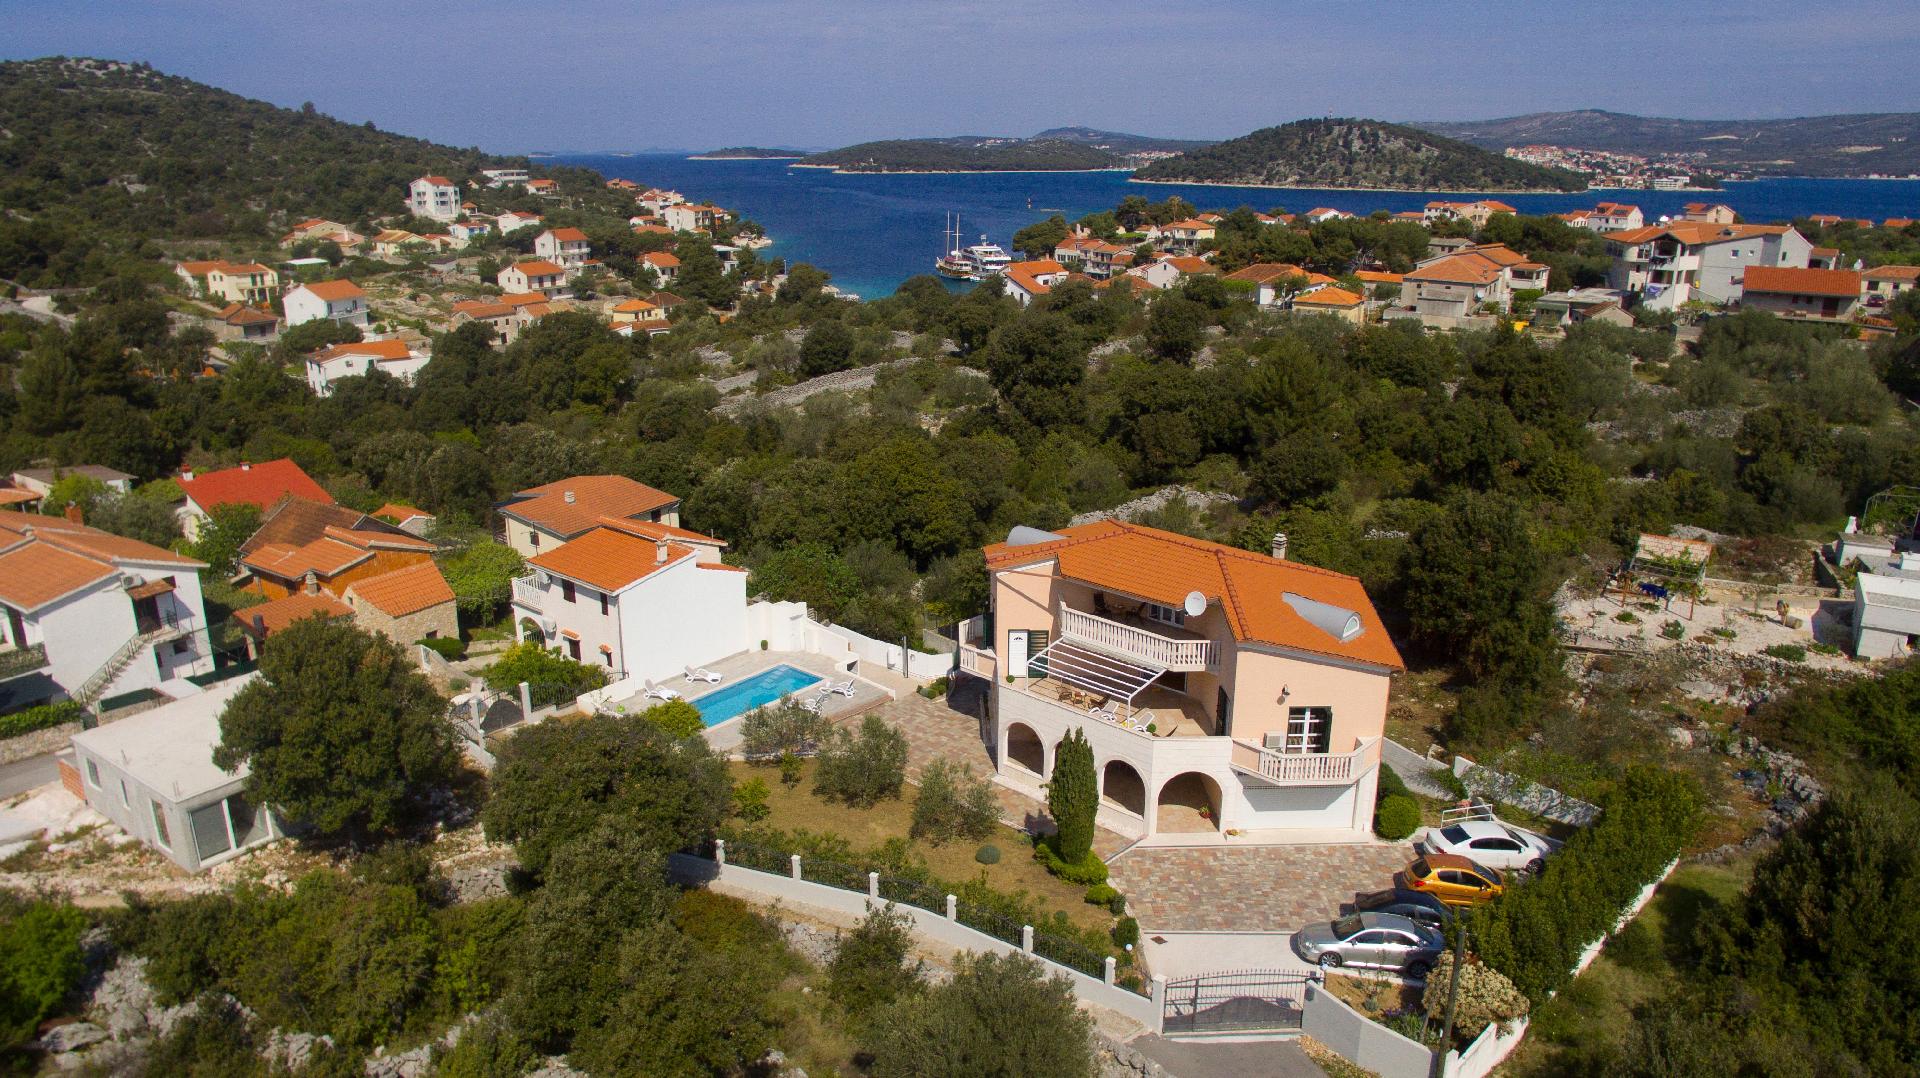 Ferienhaus mit Privatpool für 10 Personen ca. Ferienhaus in Dalmatien